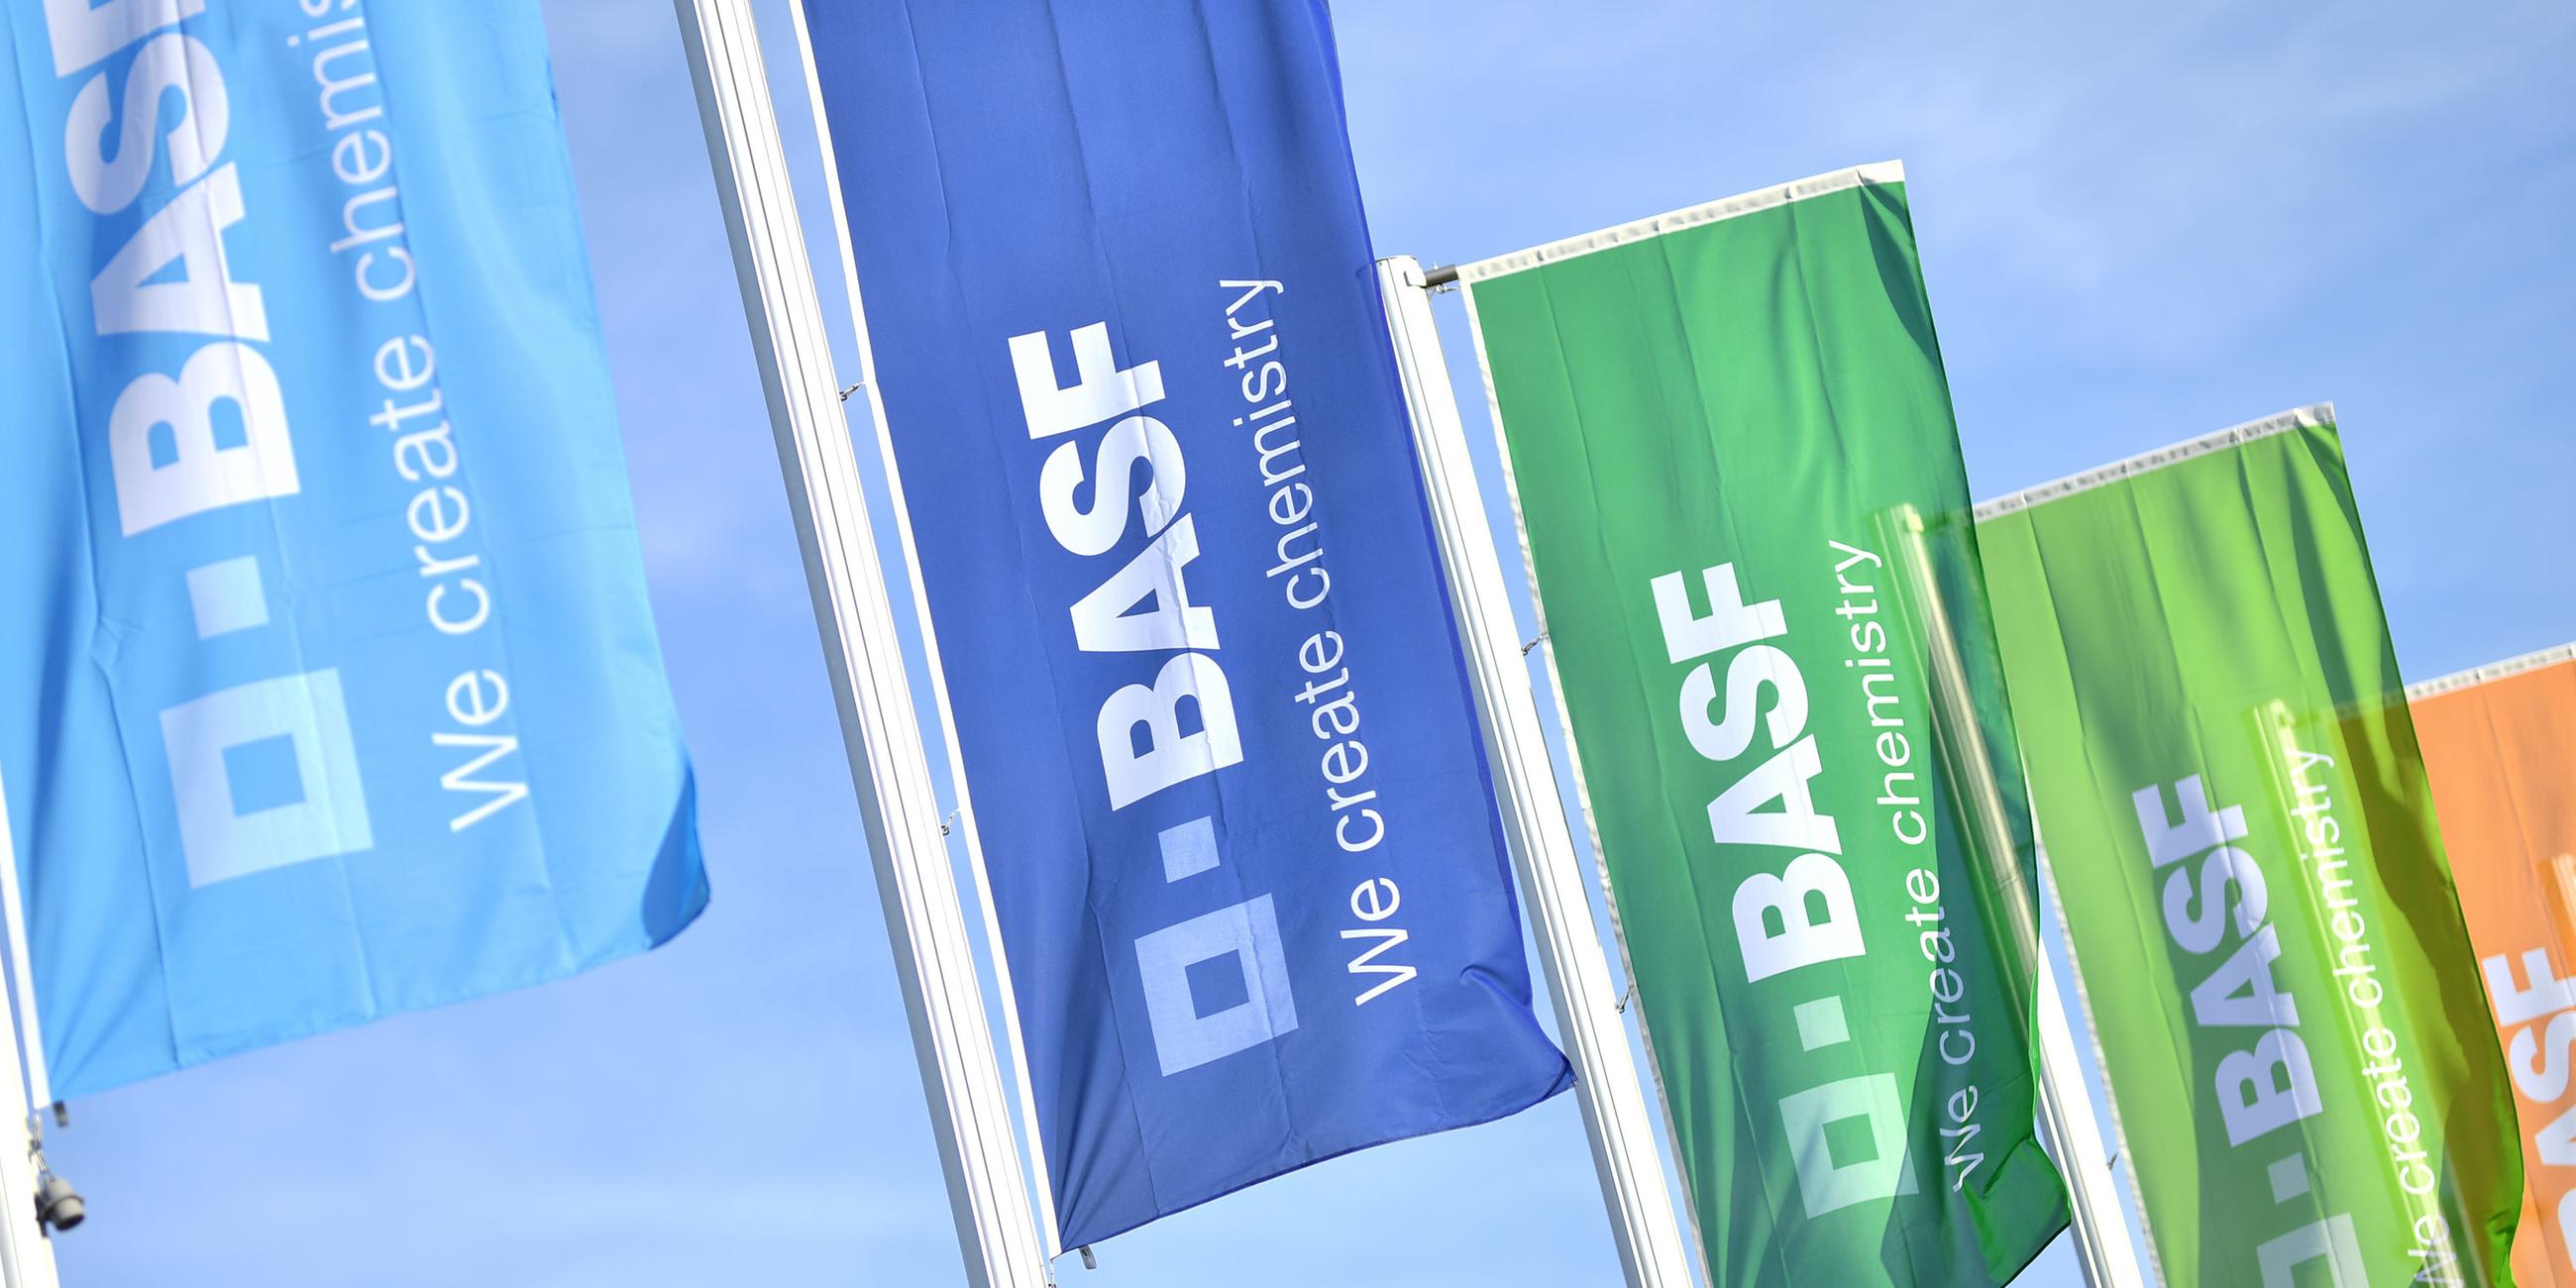 Bunte fahnen mit der aufschrift "BASF" wehen im Wind. Ludwigshafen, Deutschland.